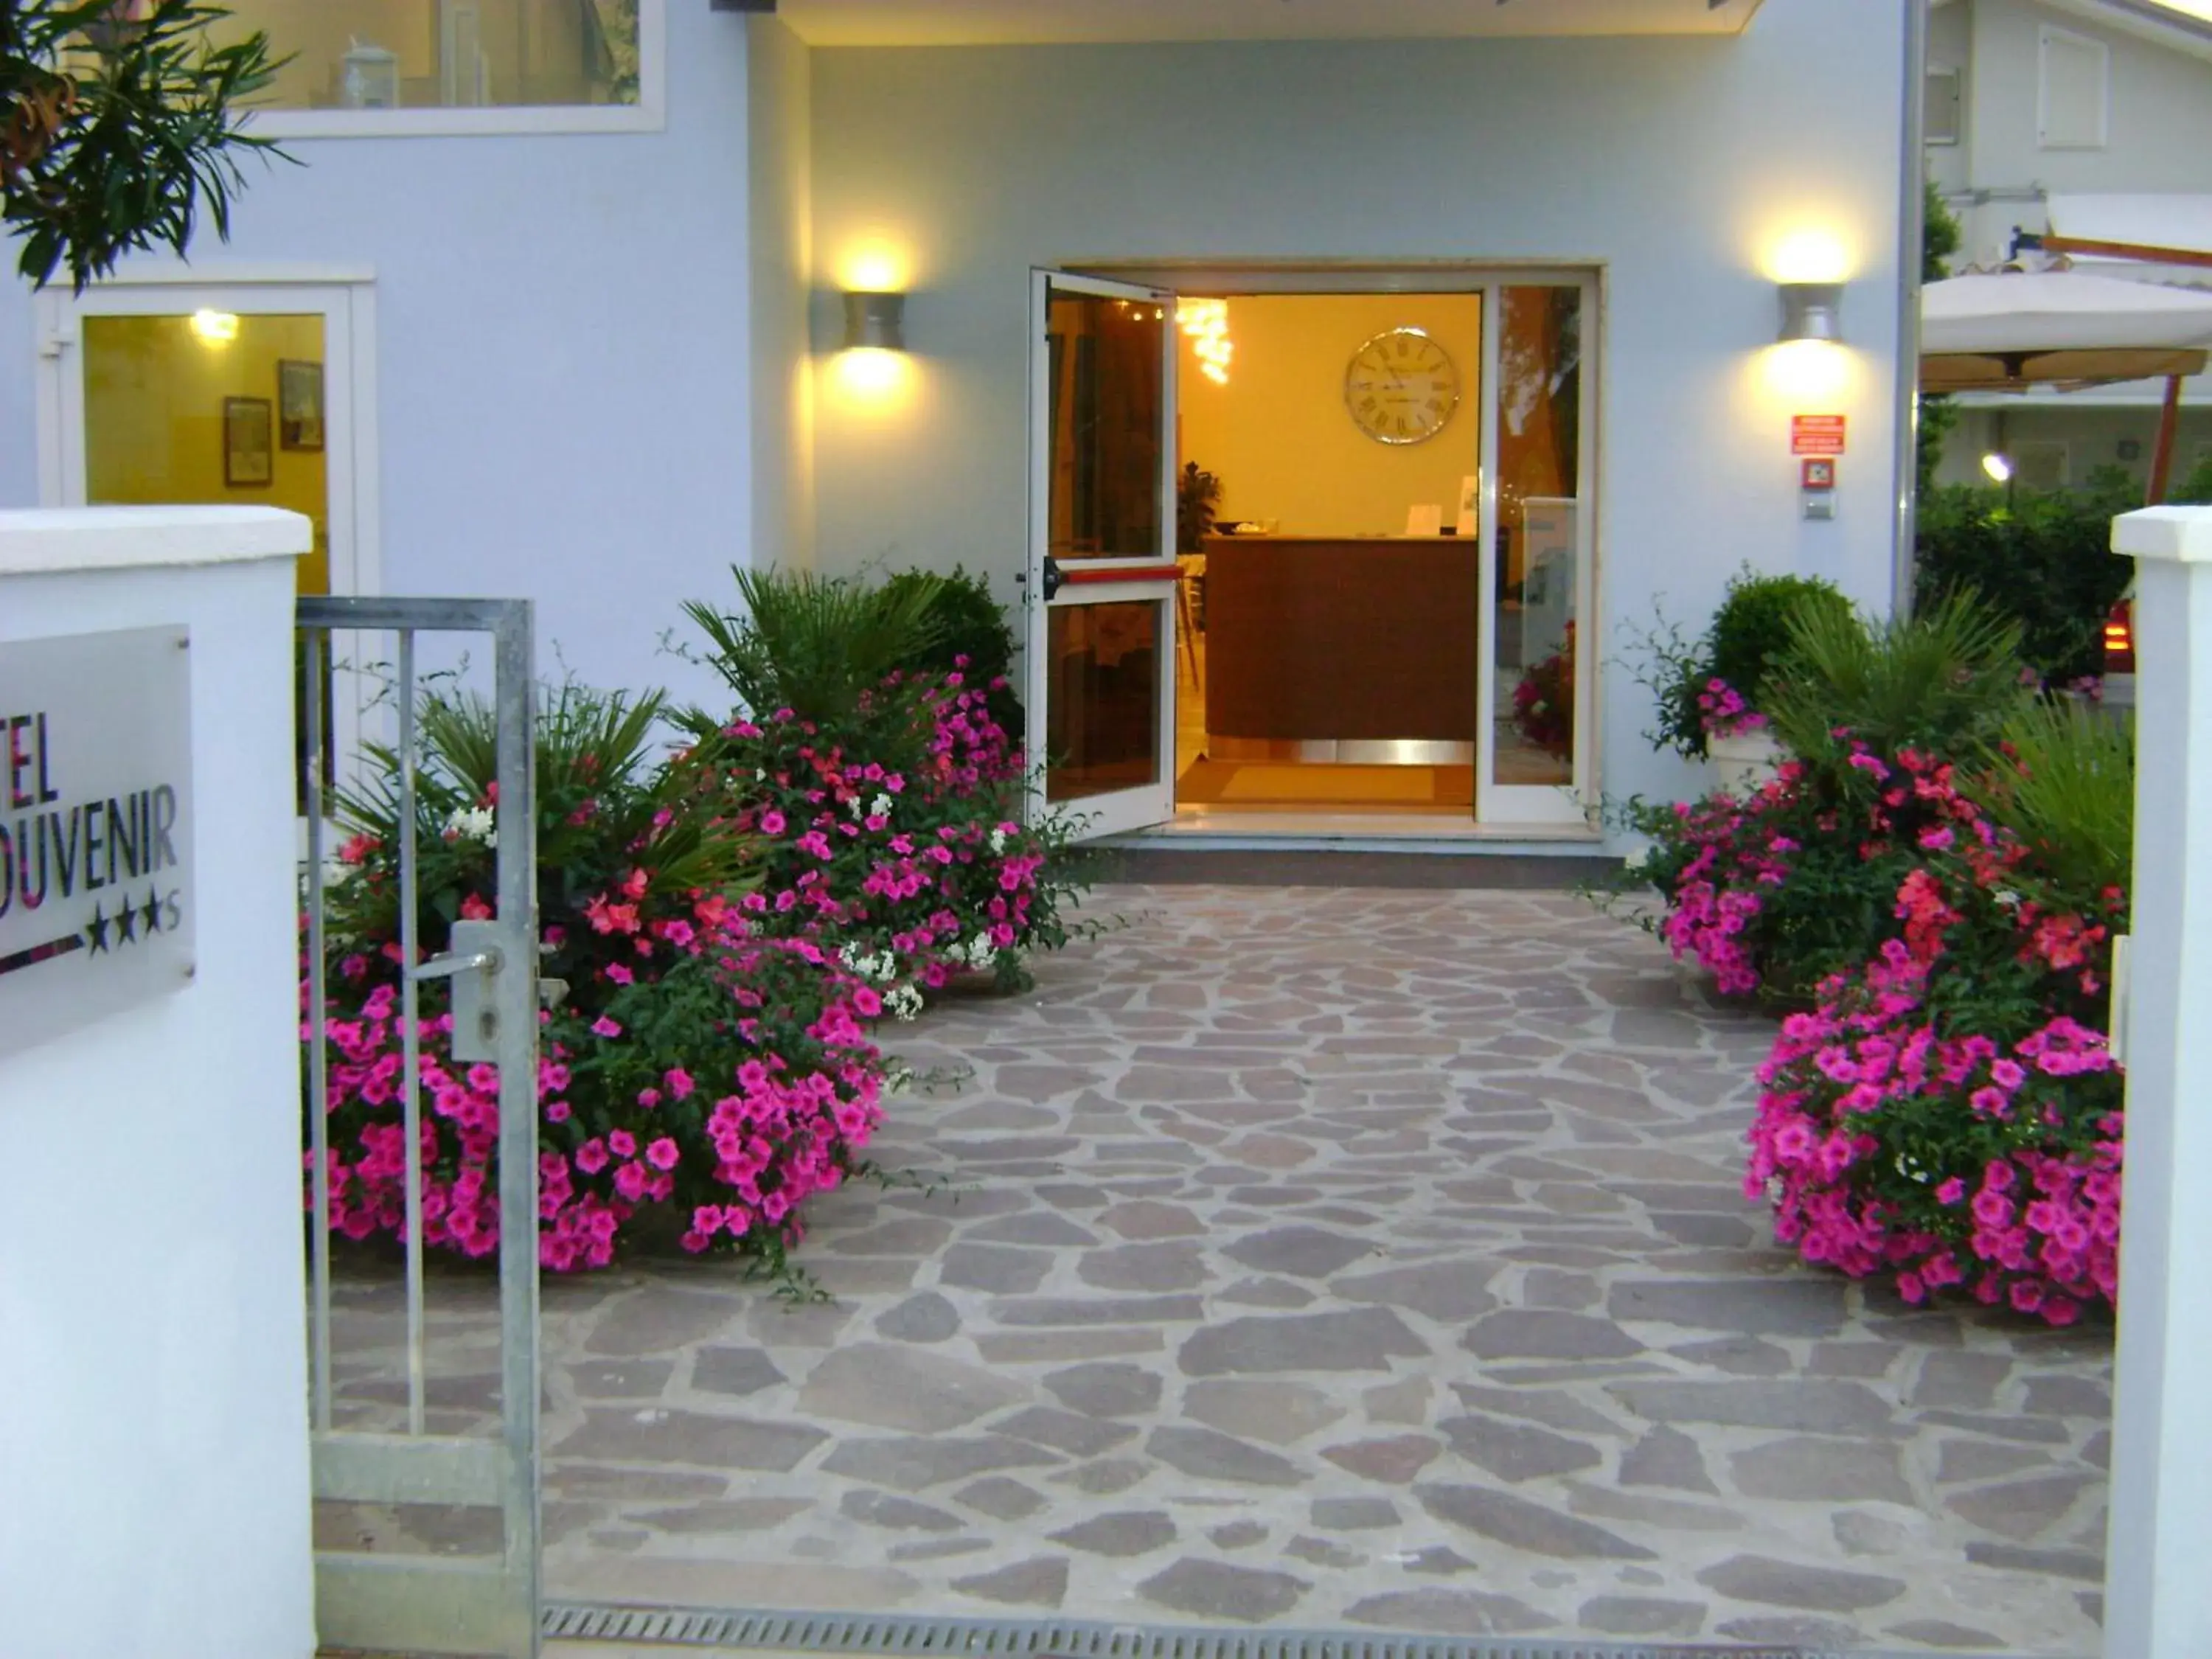 Facade/entrance in Hotel Souvenir